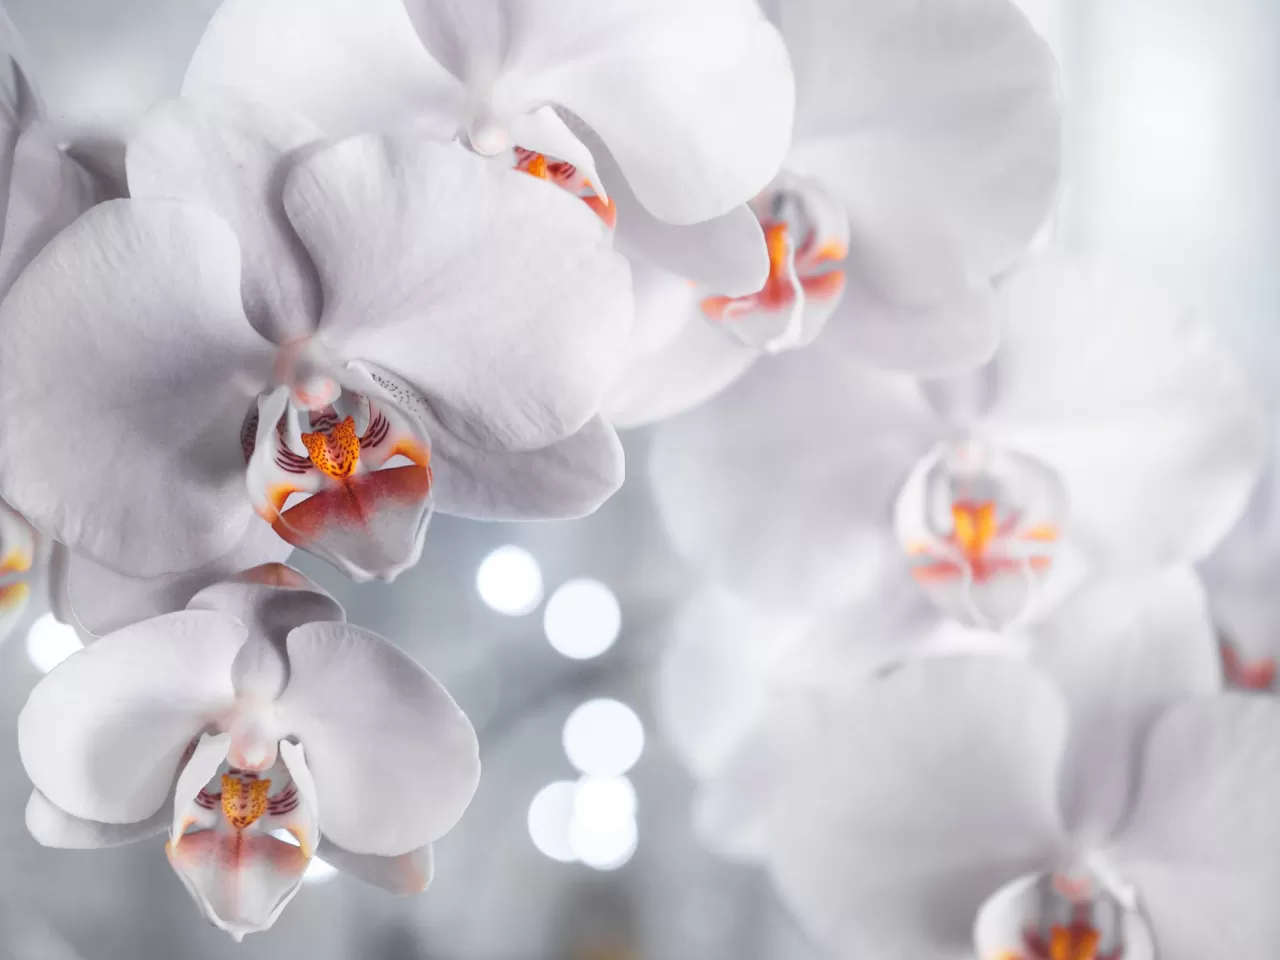 Orkide Bakımı Nasıl Yapılır? – Orkide Bakımında 9 Önemli Husus